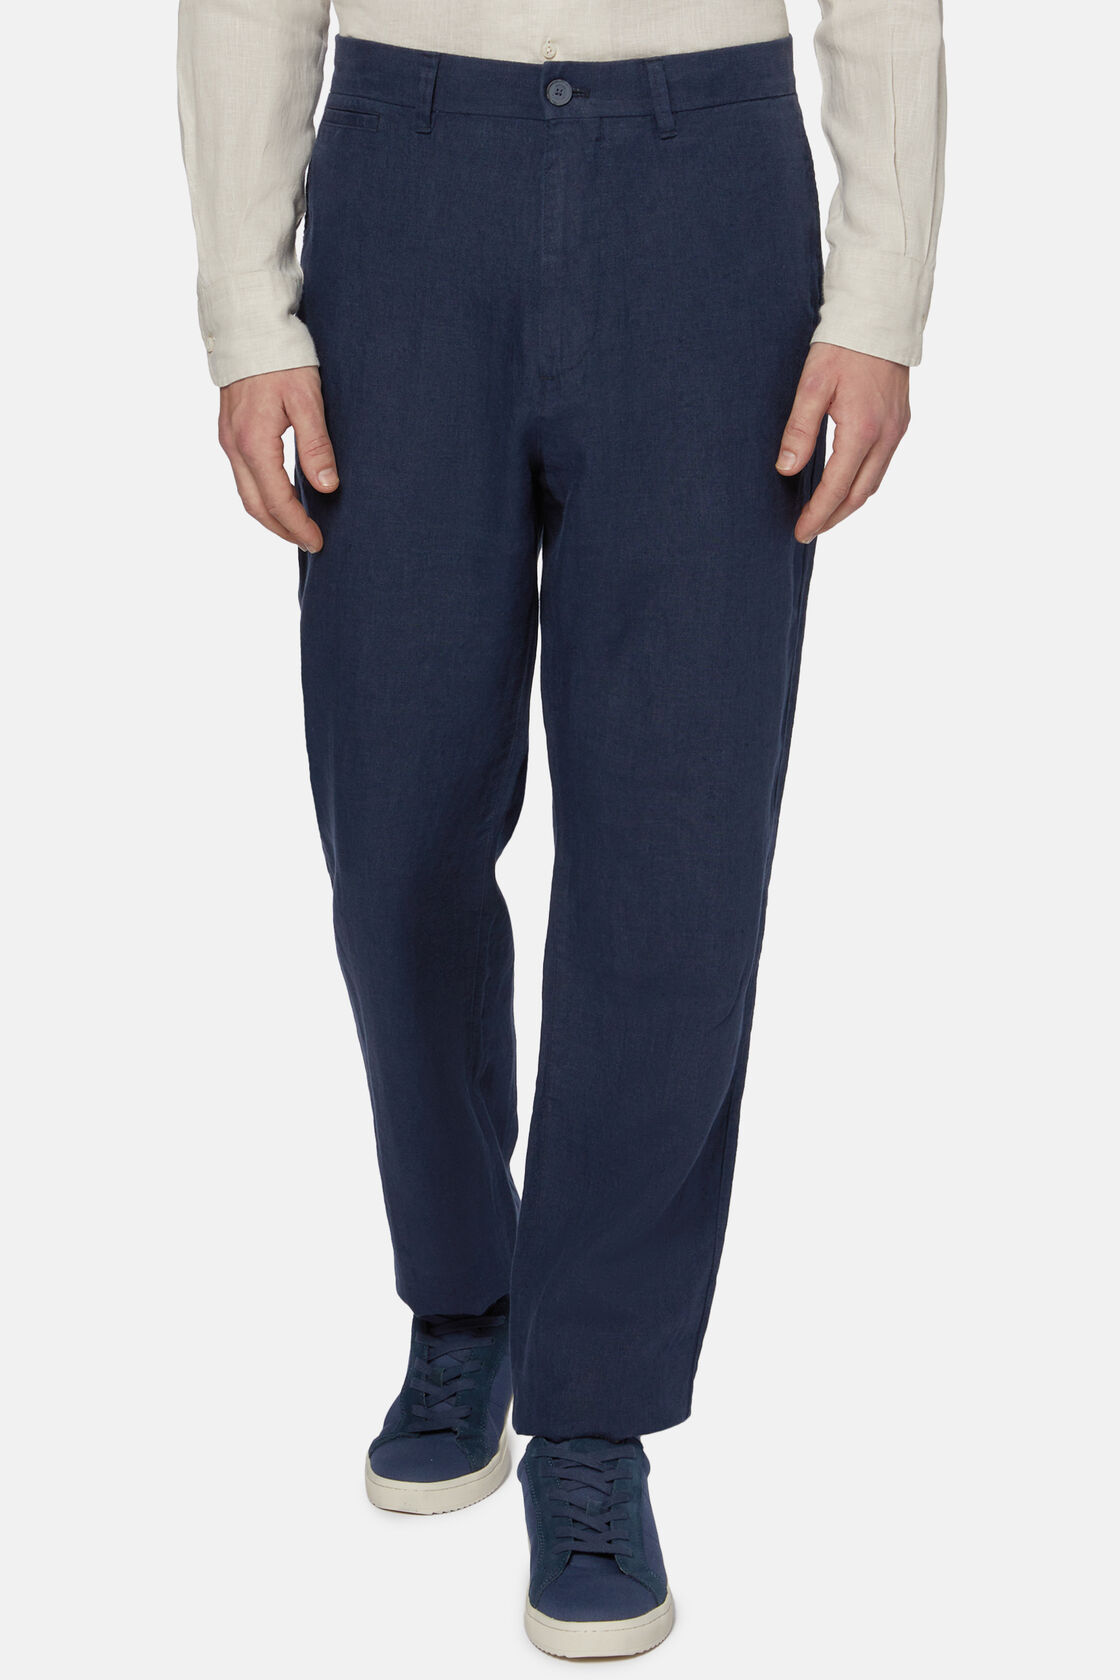 Linen Pants, Navy blue, hi-res